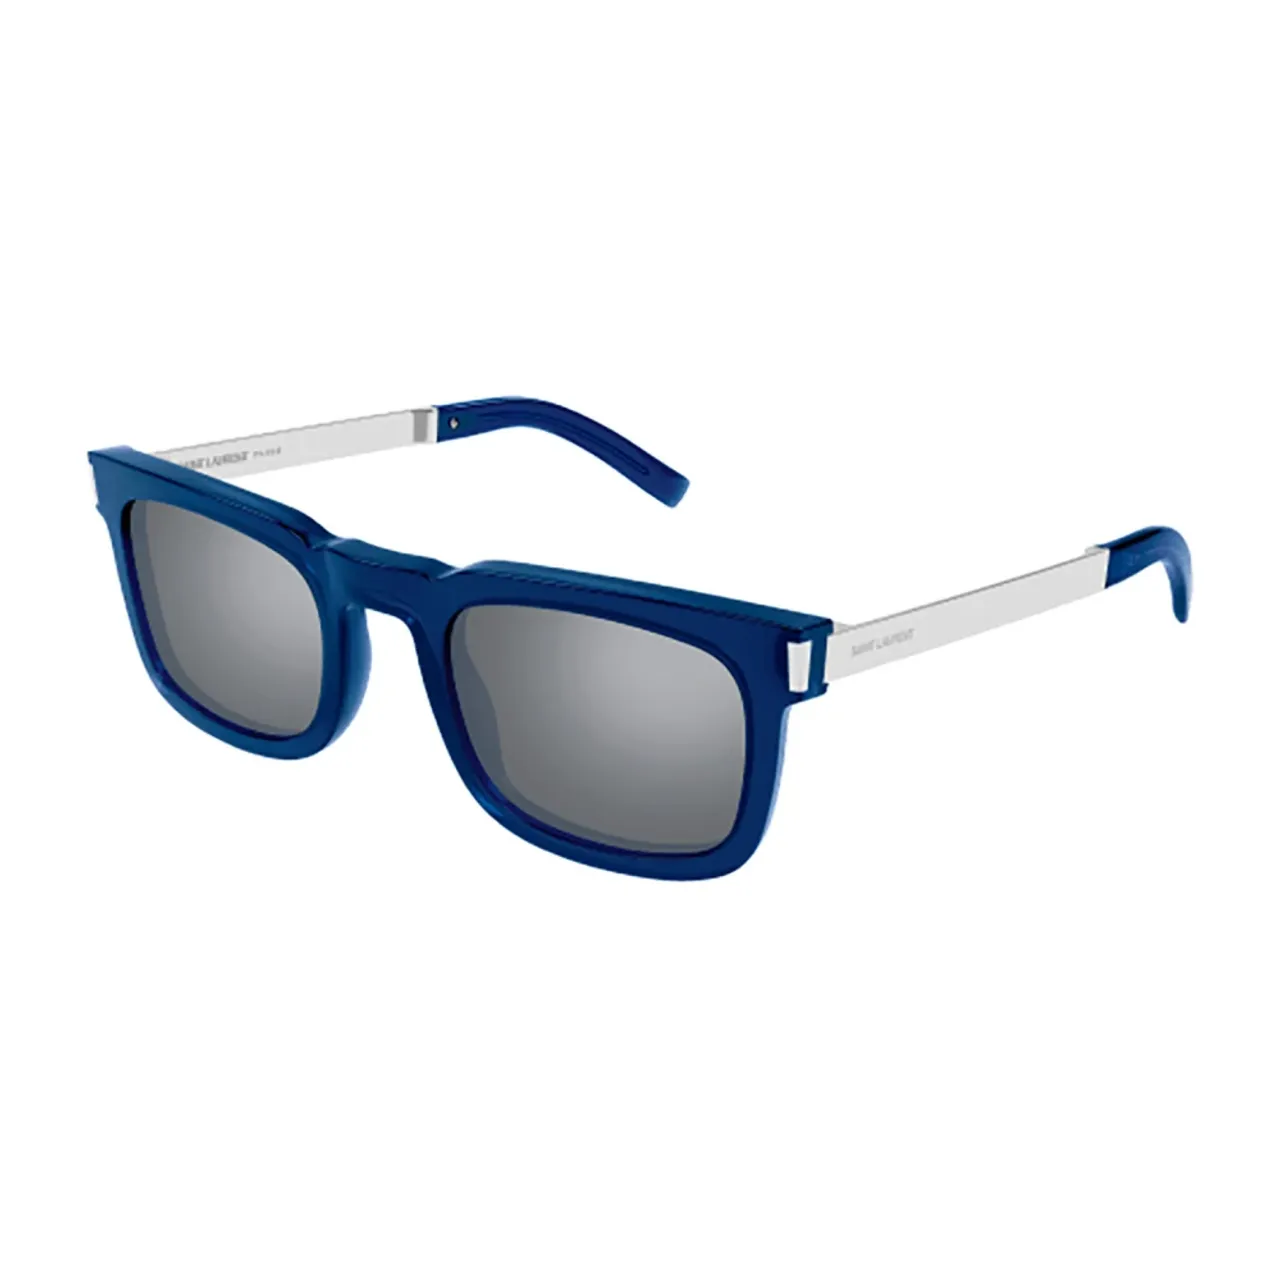 Blaue Sonnenbrille für Frauen - Modisch und funktional Saint Laurent